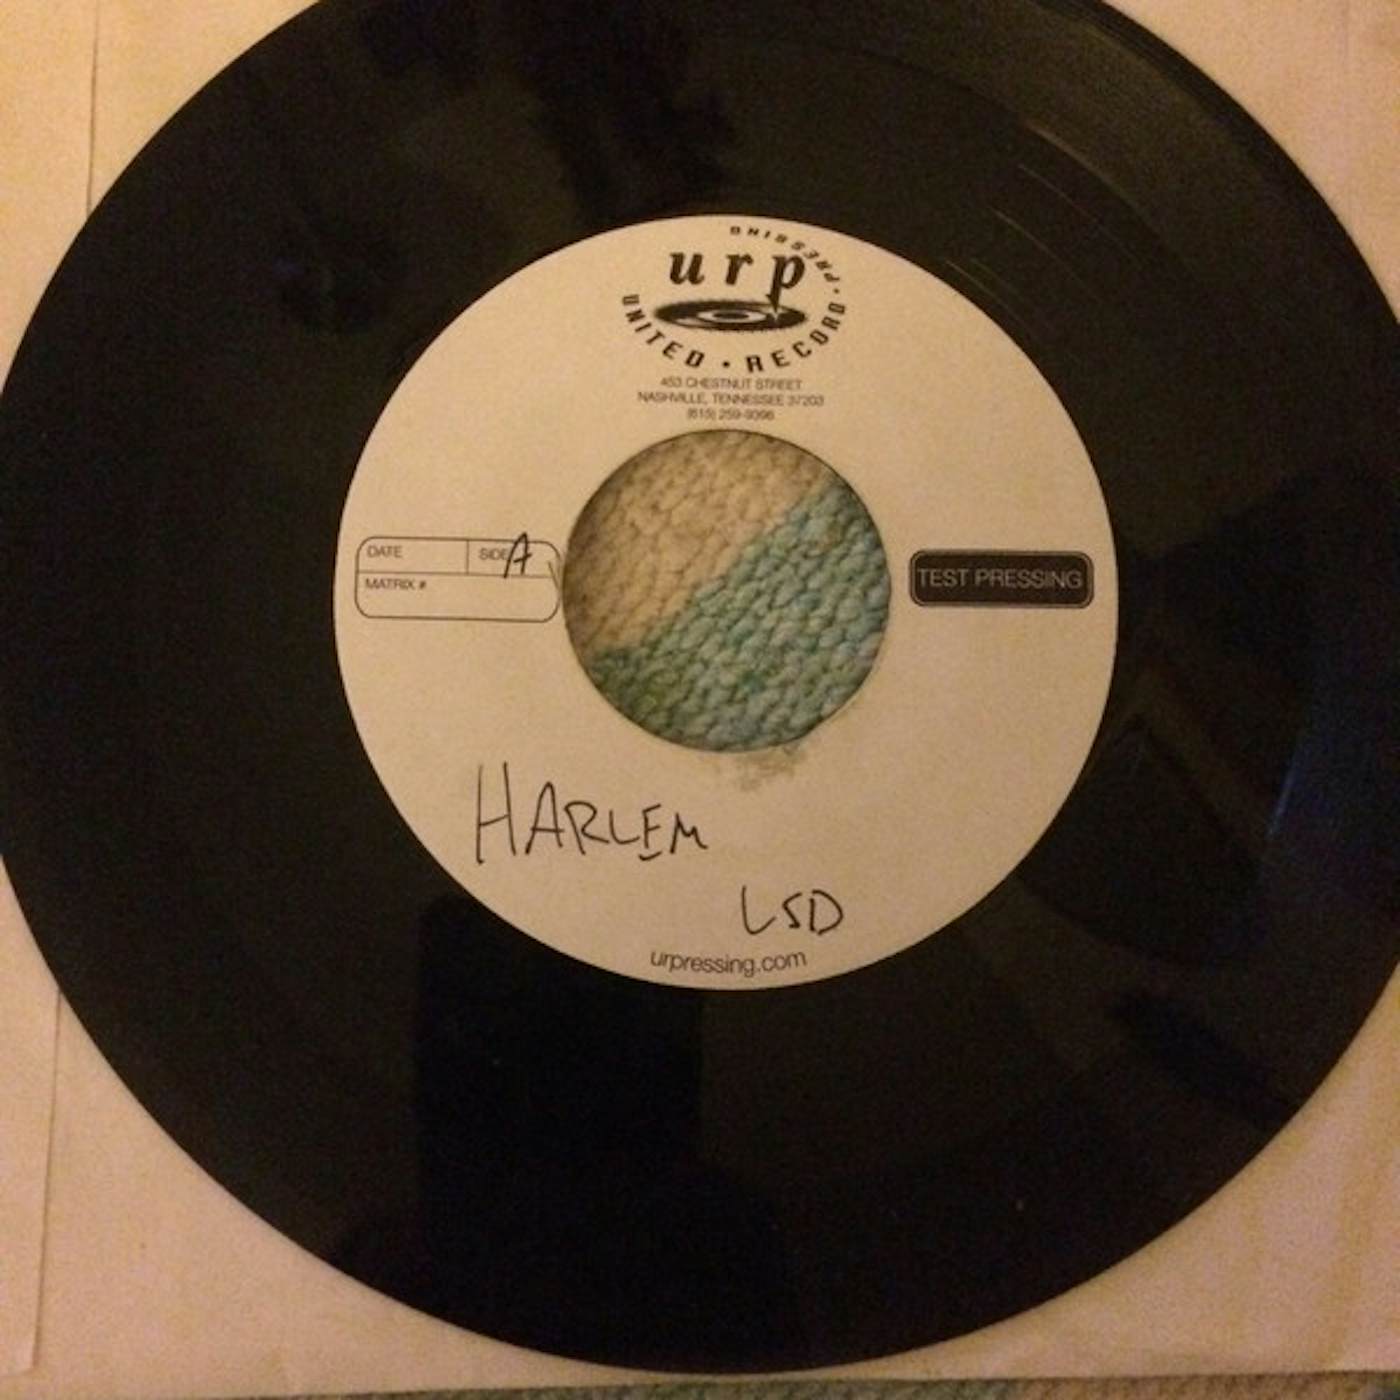 Harlem LSD SAVES / MOOD RING Vinyl Record